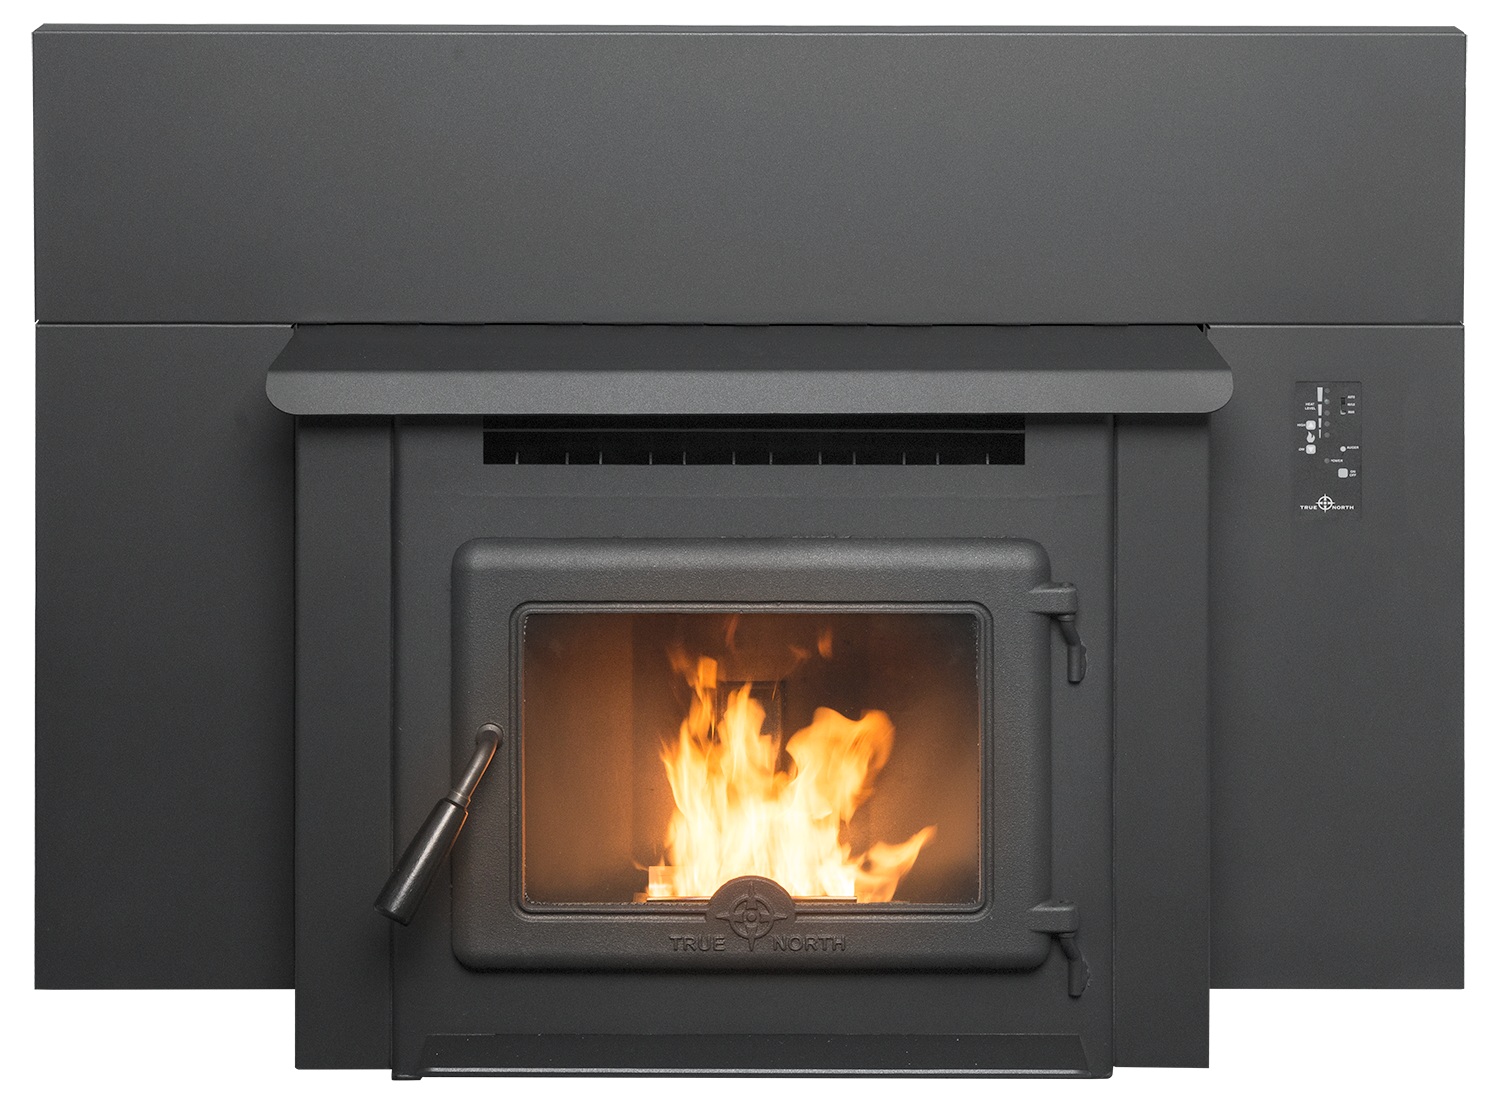 True North Tn40 Pellet Burning Fireplace Insert User Manual